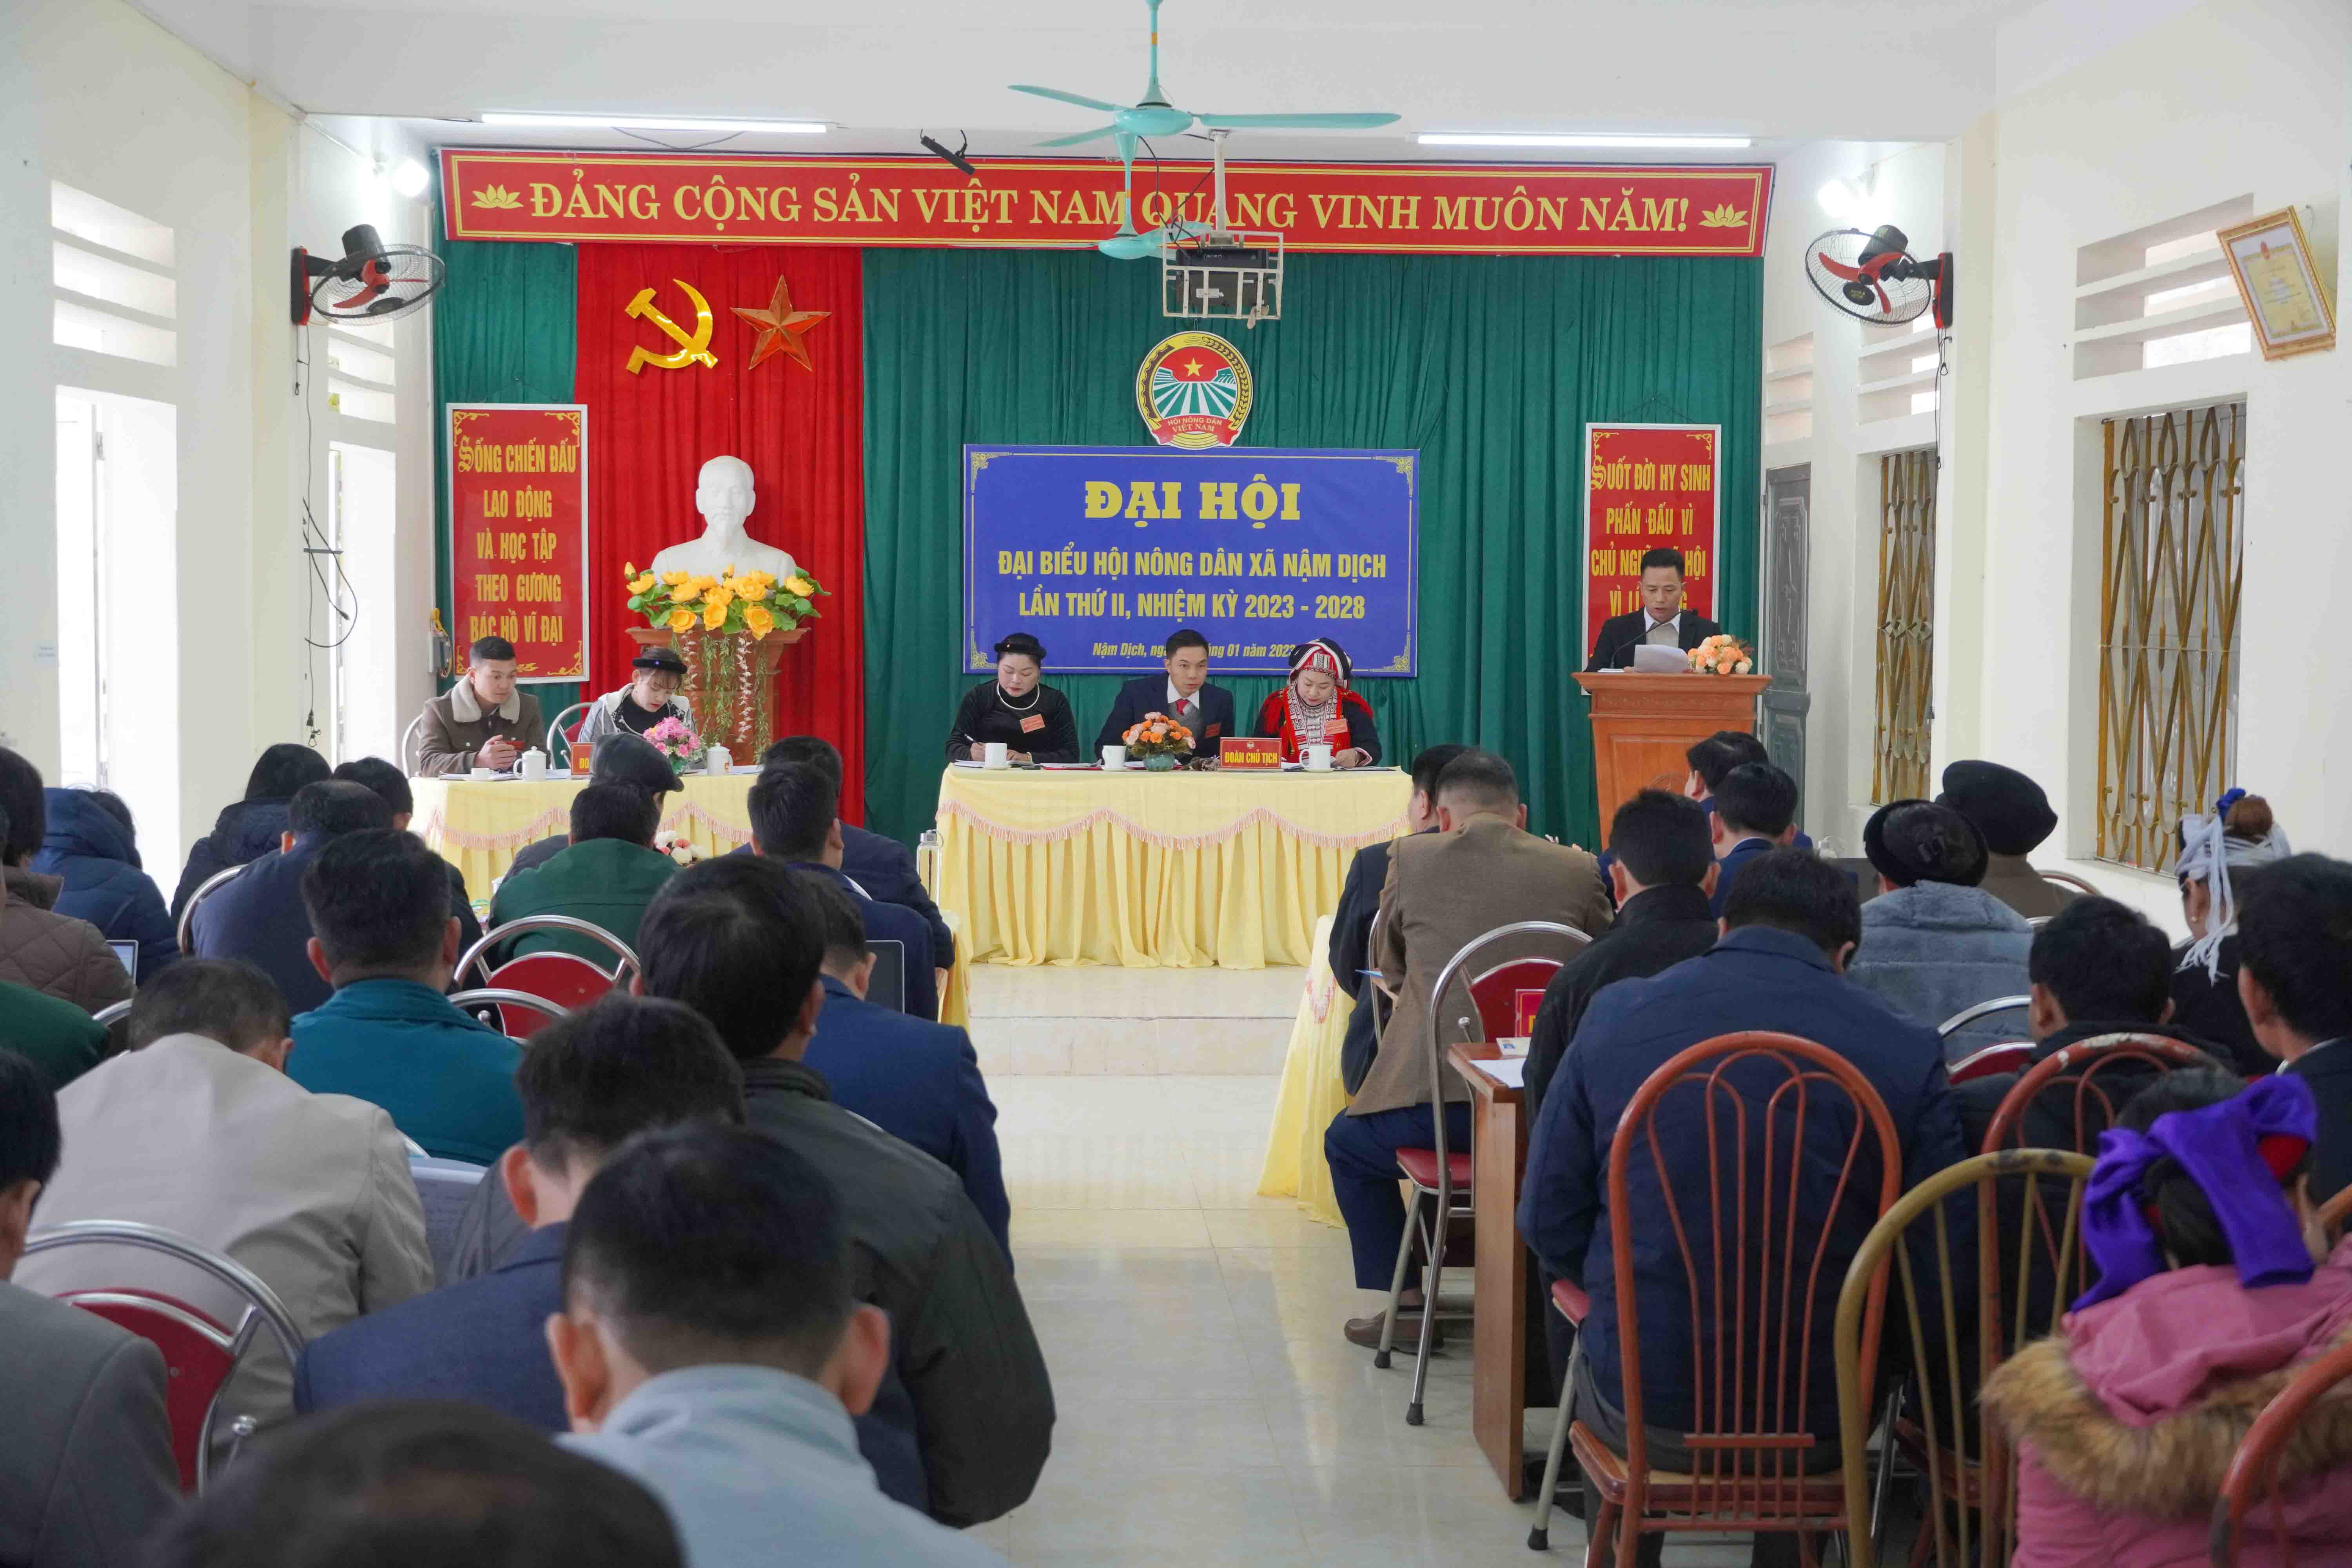 Đại hội điểm Hội nông dân xã Nậm Dịch lần thứ II, nhiệm kỳ 2023 -2028